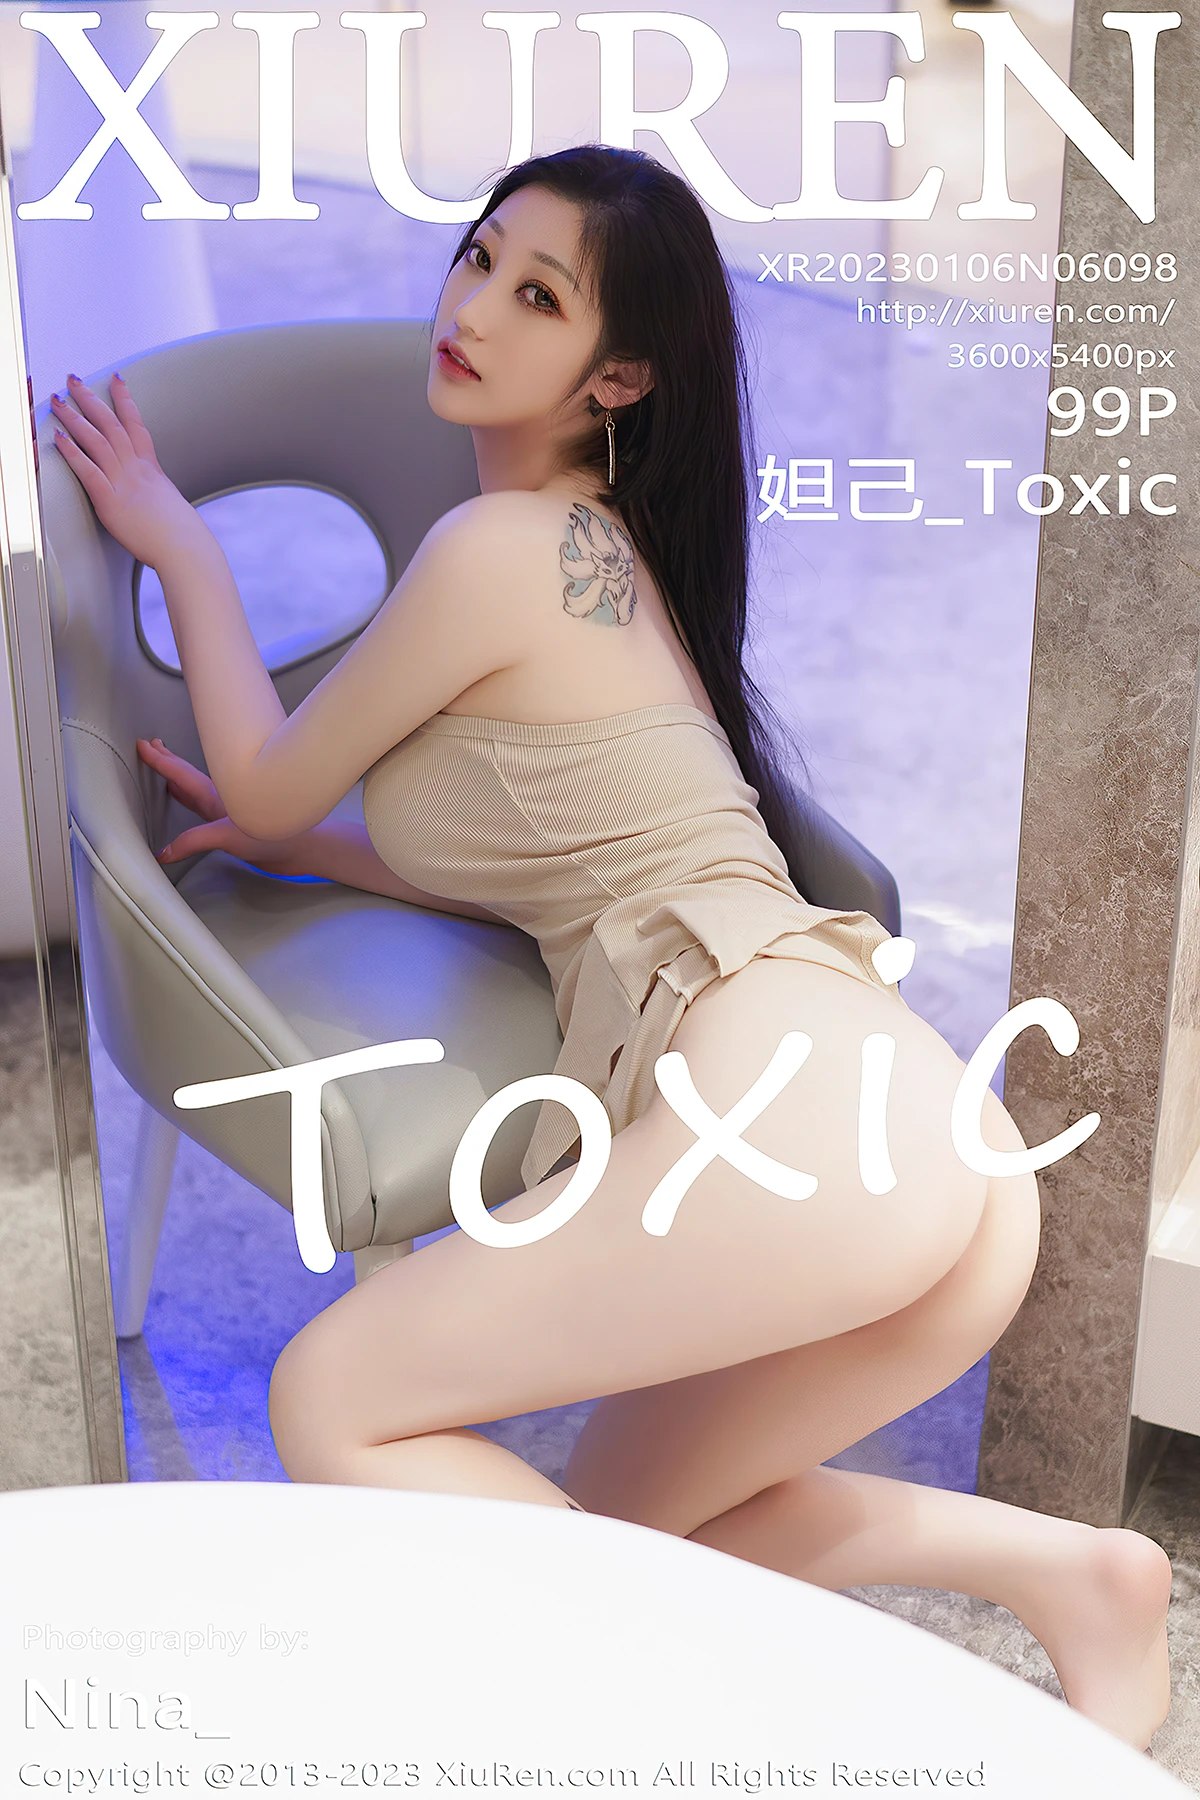 [XIUREN] No.6098 Daji_Toxic 妲己_Toxic Cover Photo